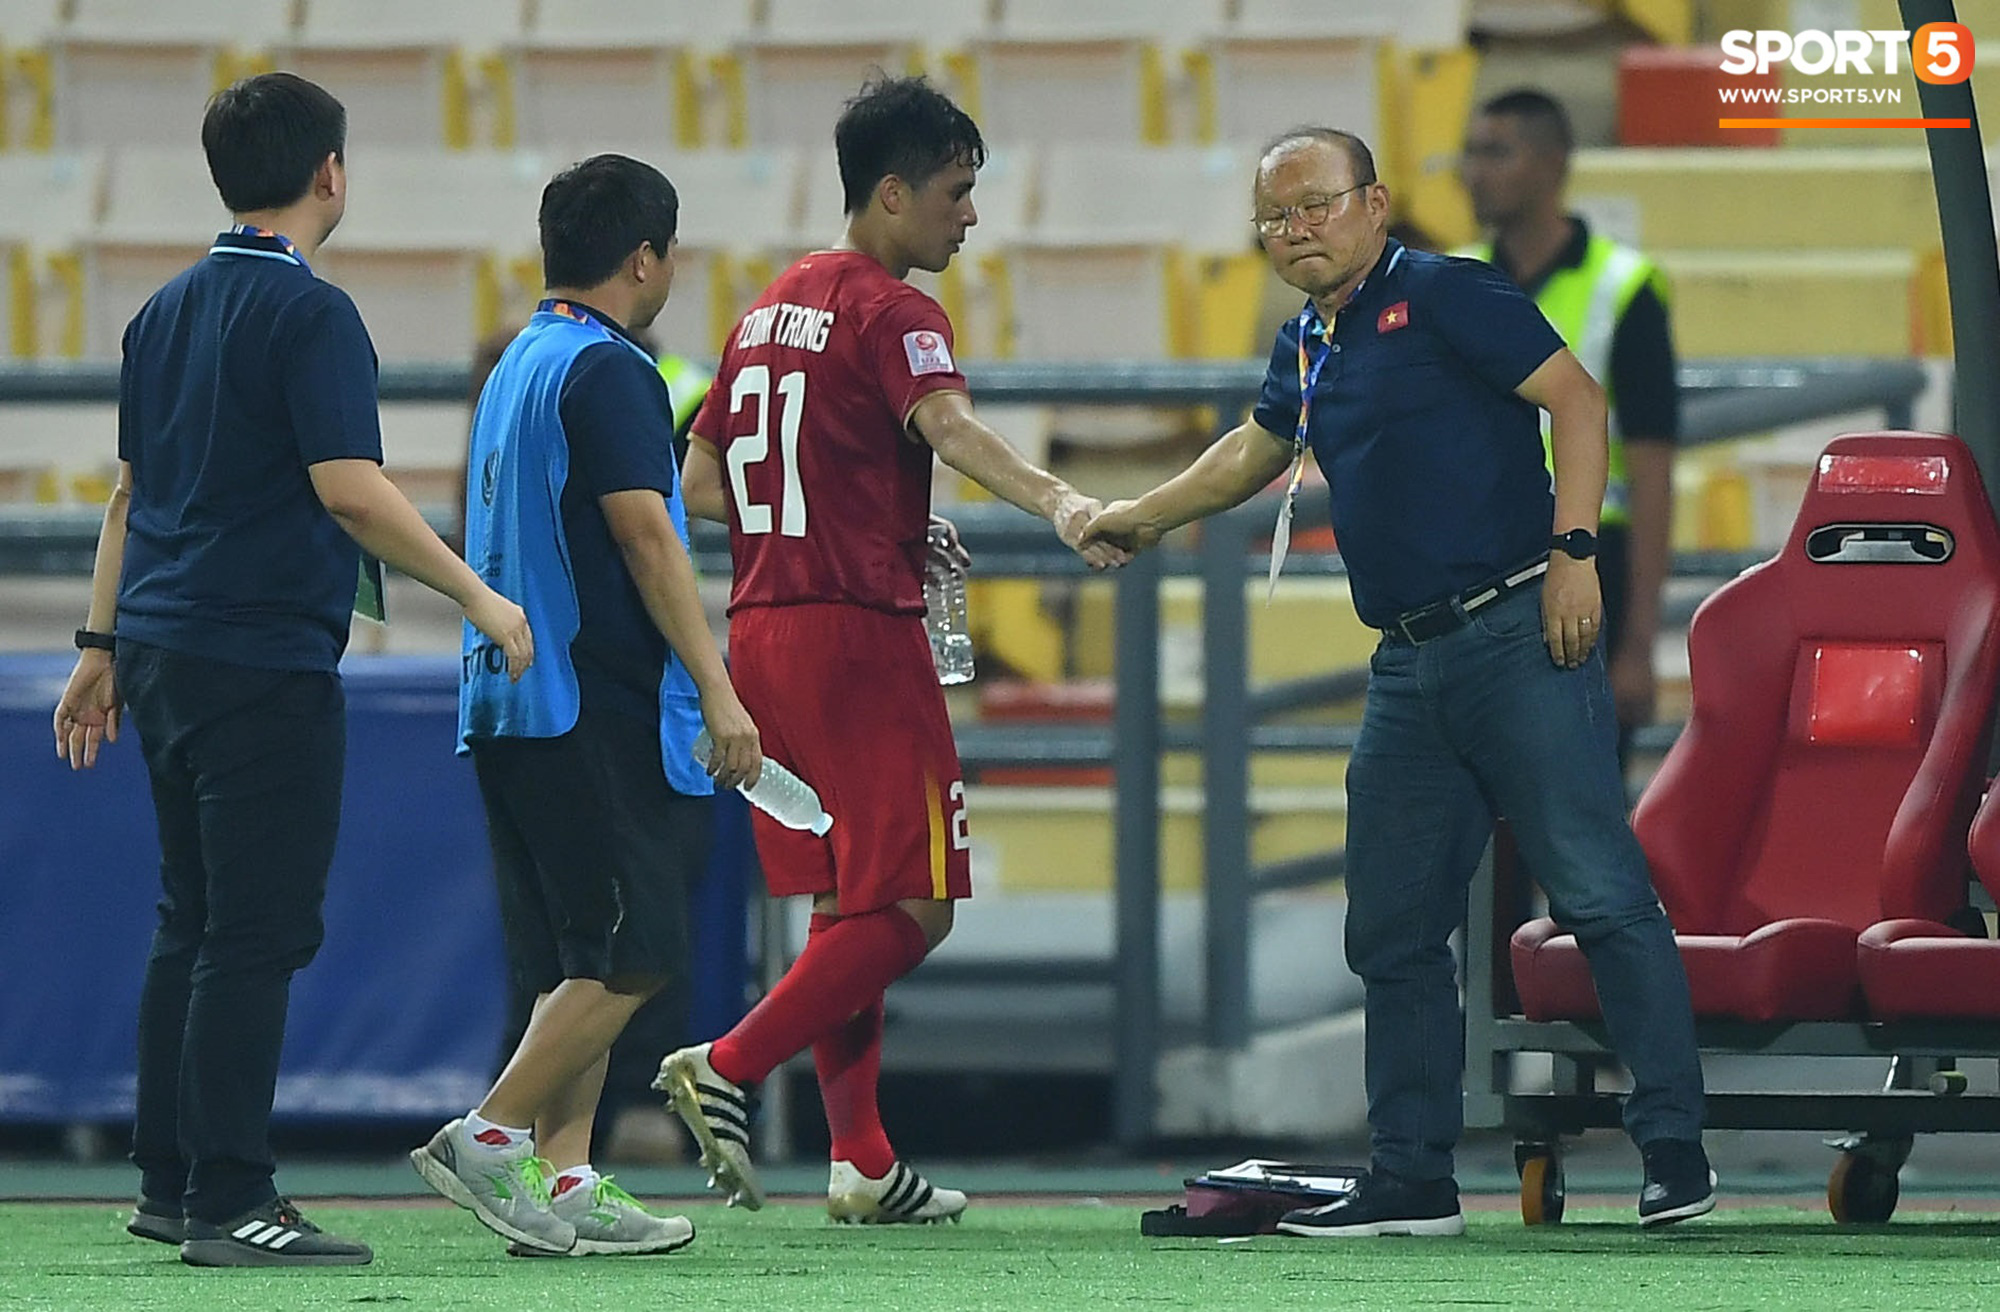 Thực hư chuyện tuyển Việt Nam đá giao hữu với Iraq để Đình Trọng tẩy thẻ đỏ, kịp dự vòng loại World Cup 2022 - Ảnh 2.